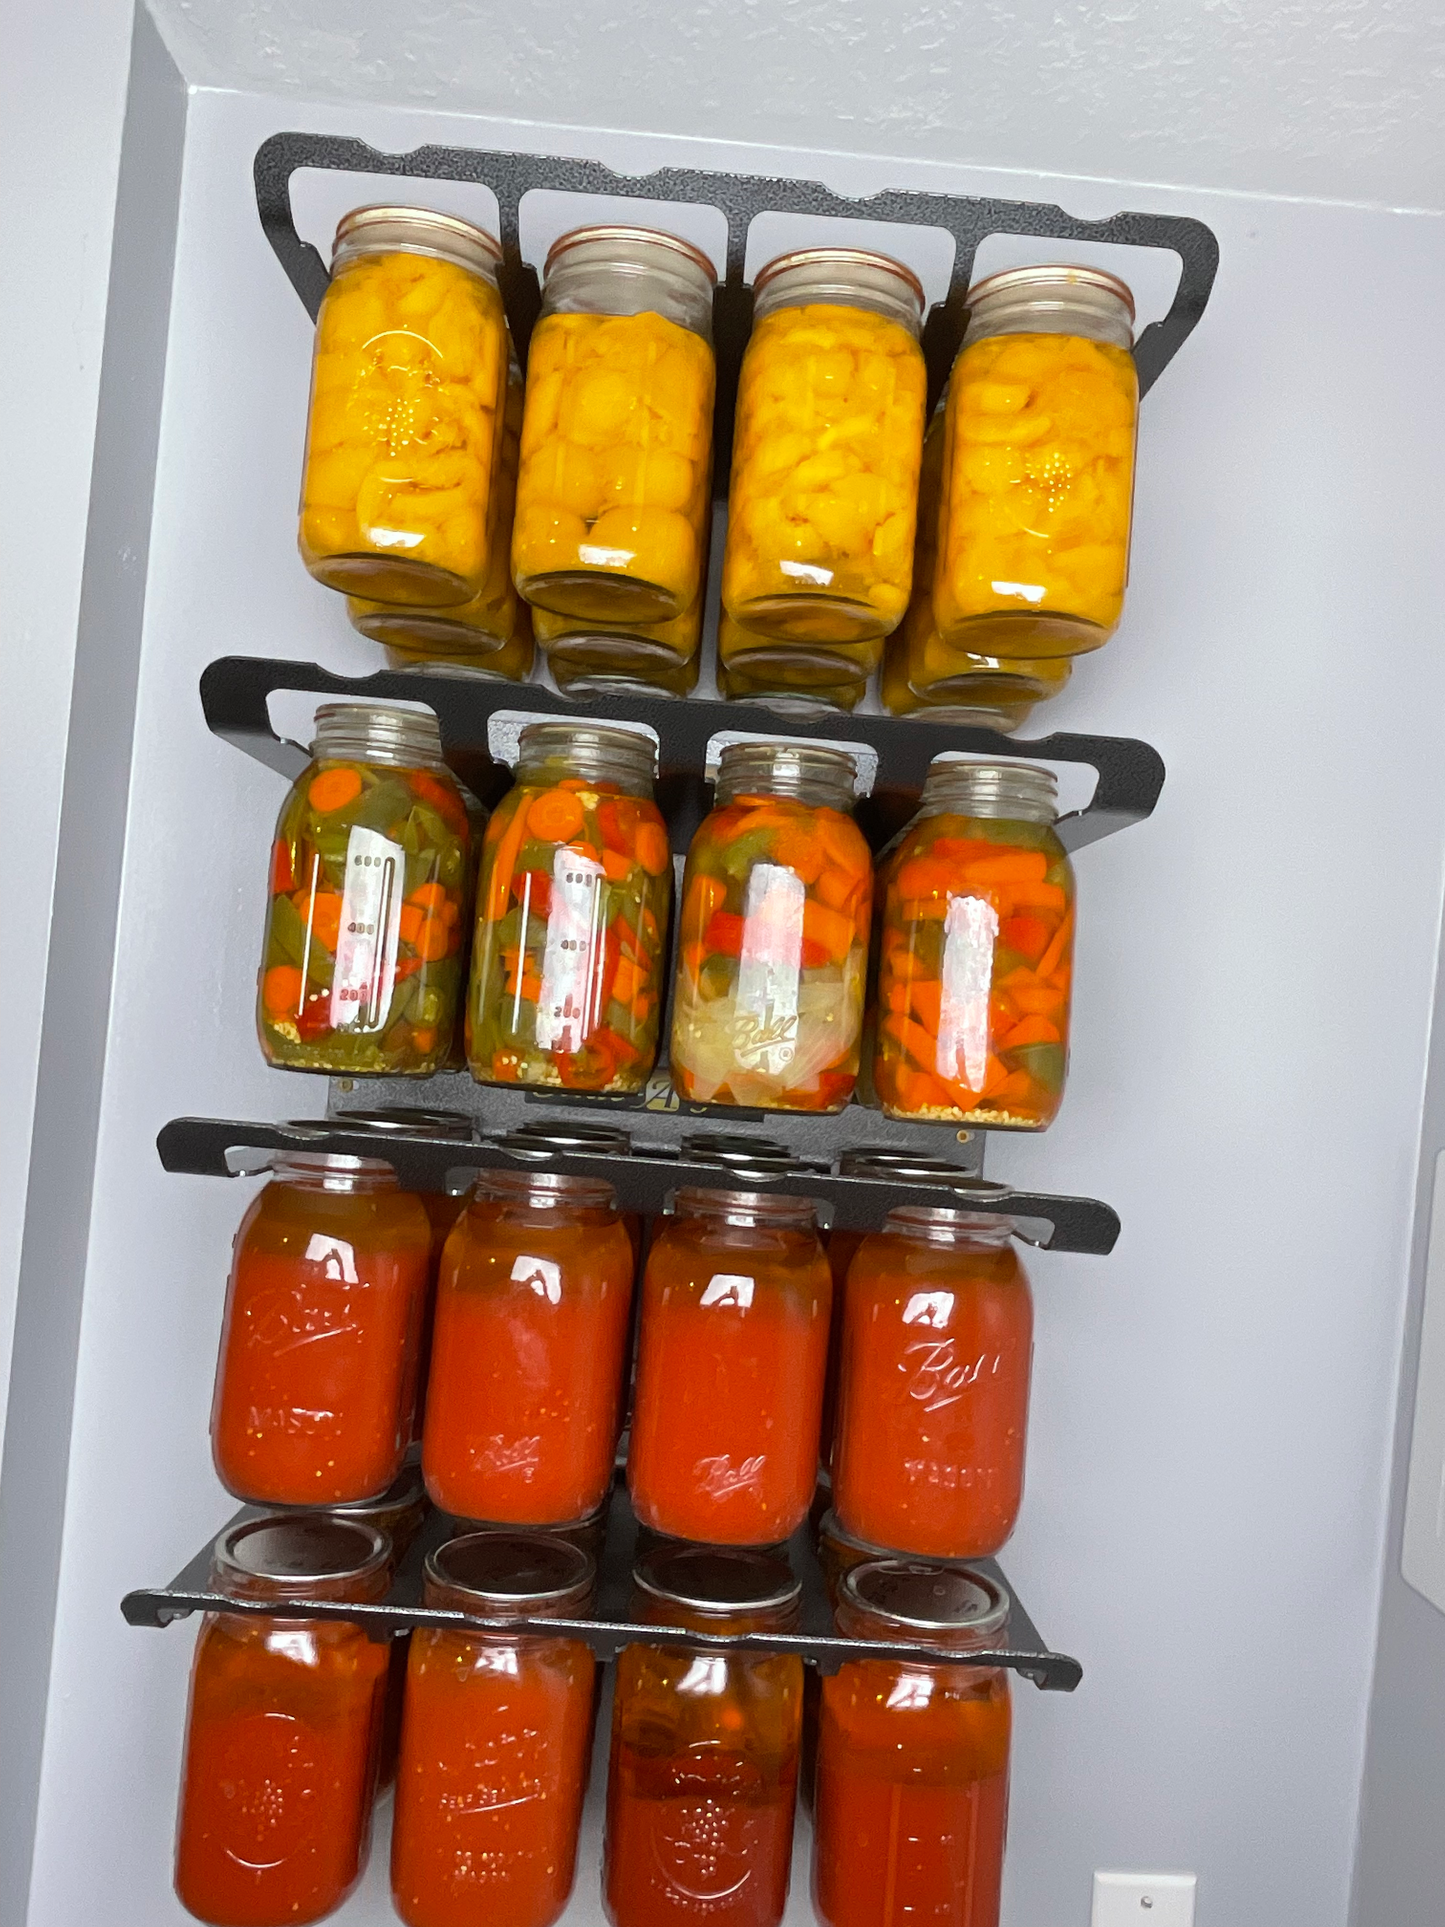 pressure canning, mason jar, kerr jar, Ball jar, food storage